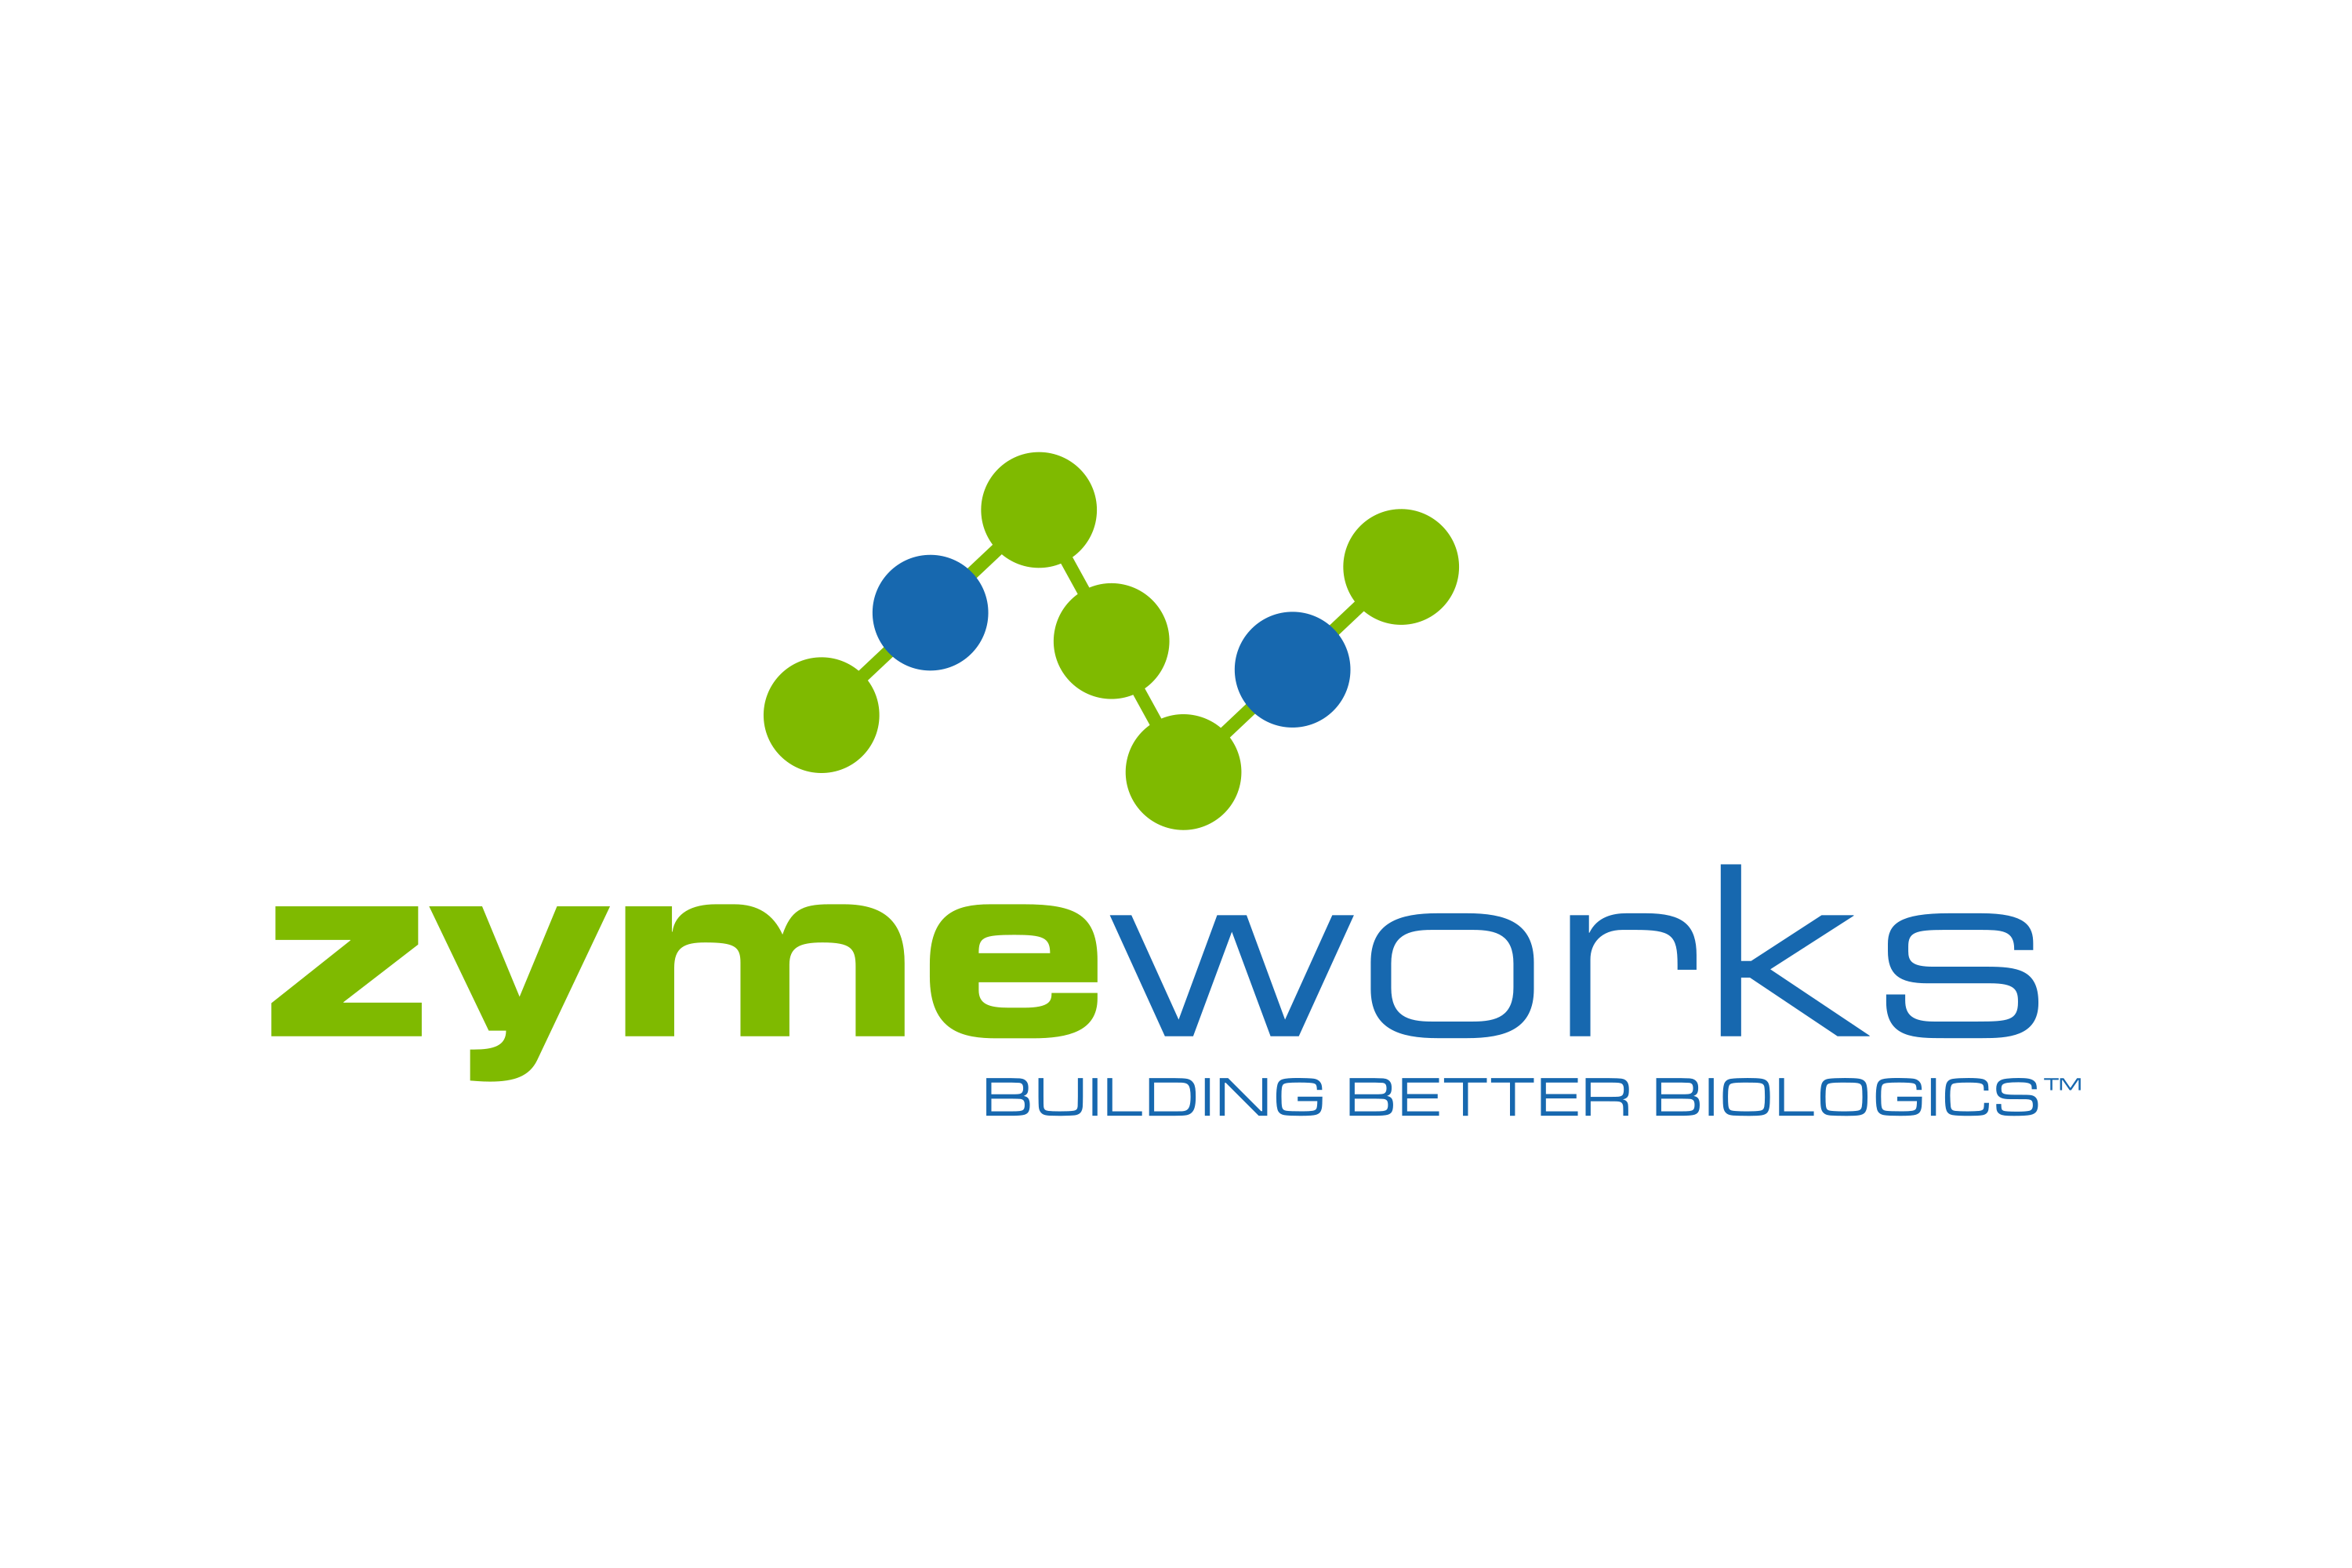 Zymeworks Logo